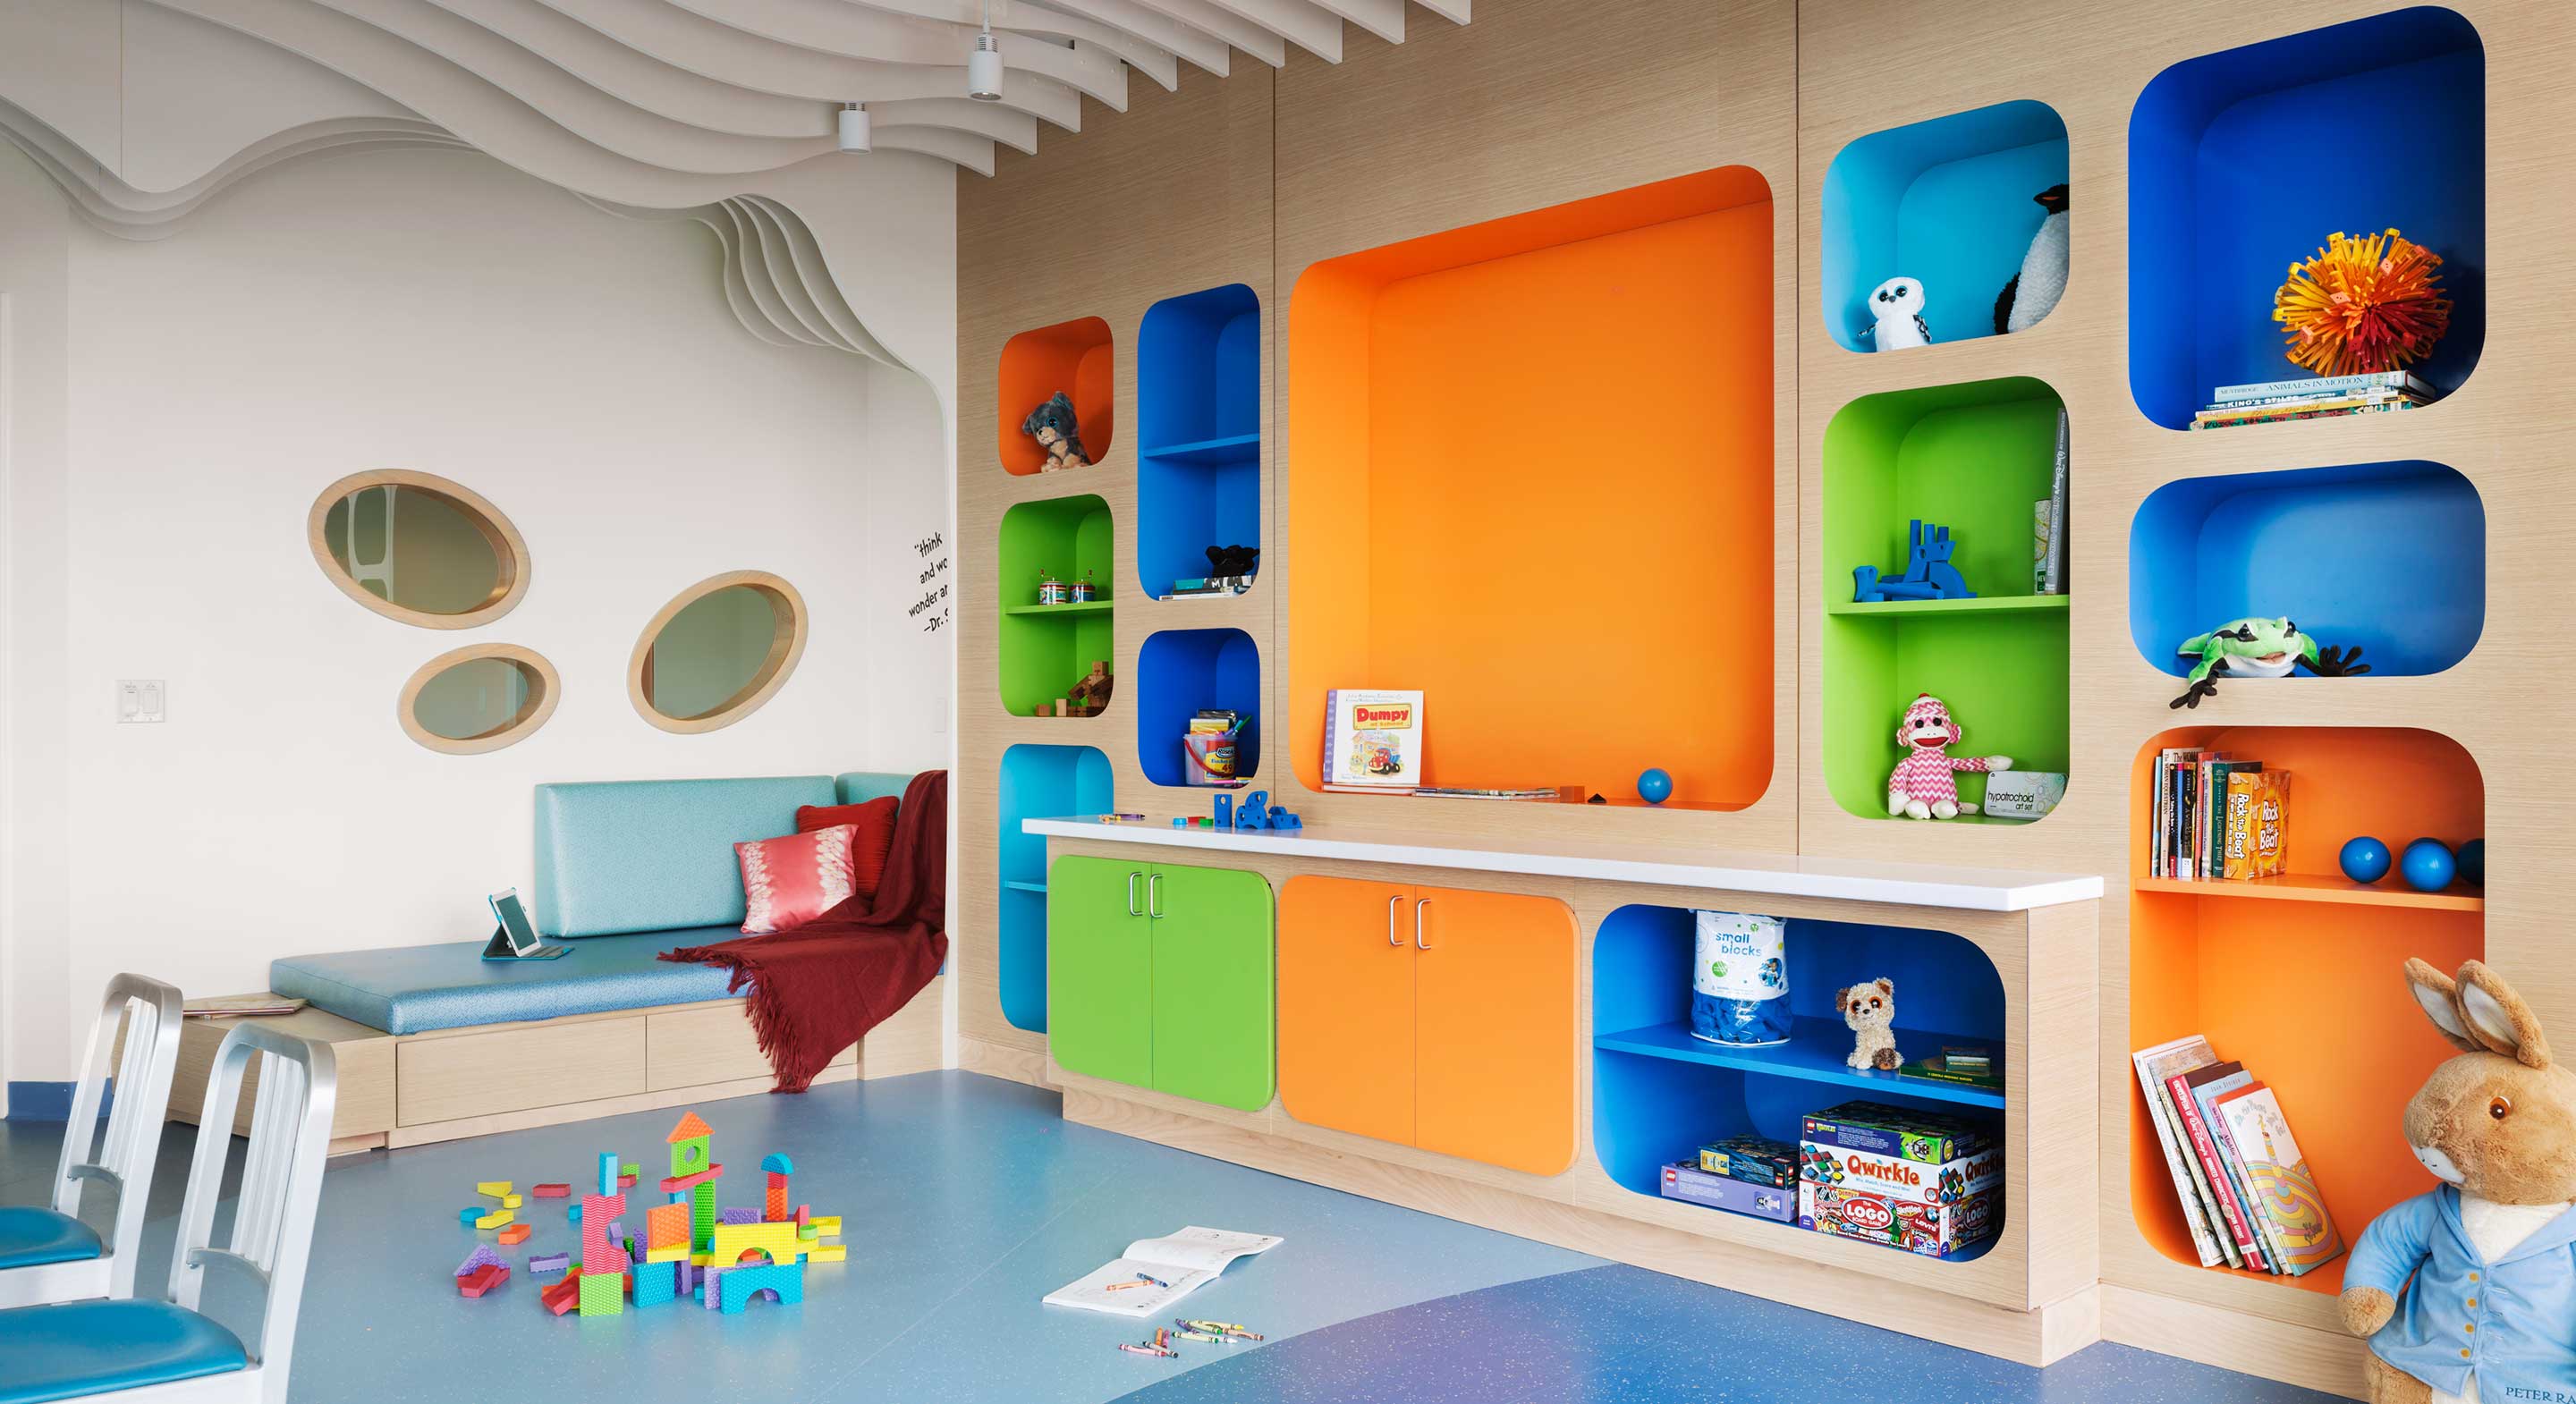 радуга м мебель для детских садов